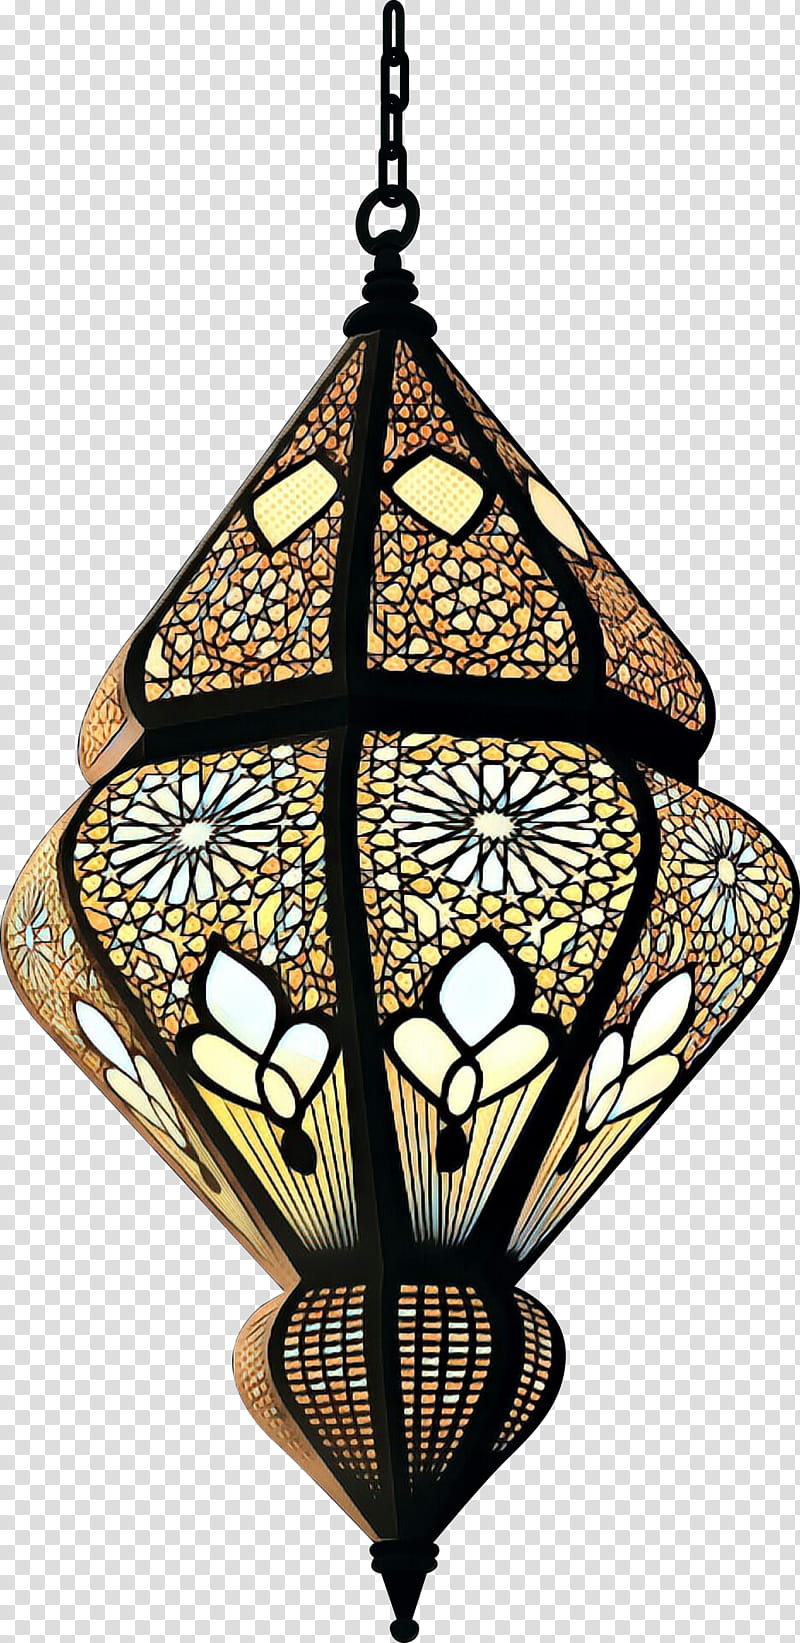 Islamic Art, đem đến thế giới nghệ thuật Hồi giáo cho bạn. Với sự kết hợp giữa nghệ thuật và tôn giáo, Islam Art đã đặt chân tới nhiều quốc gia, mang đến một thế giới nghệ thuật phong phú và đa dạng. Cùng đắm chìm vào cuộc hành trình nghệ thuật tuyệt vời này qua hình ảnh.